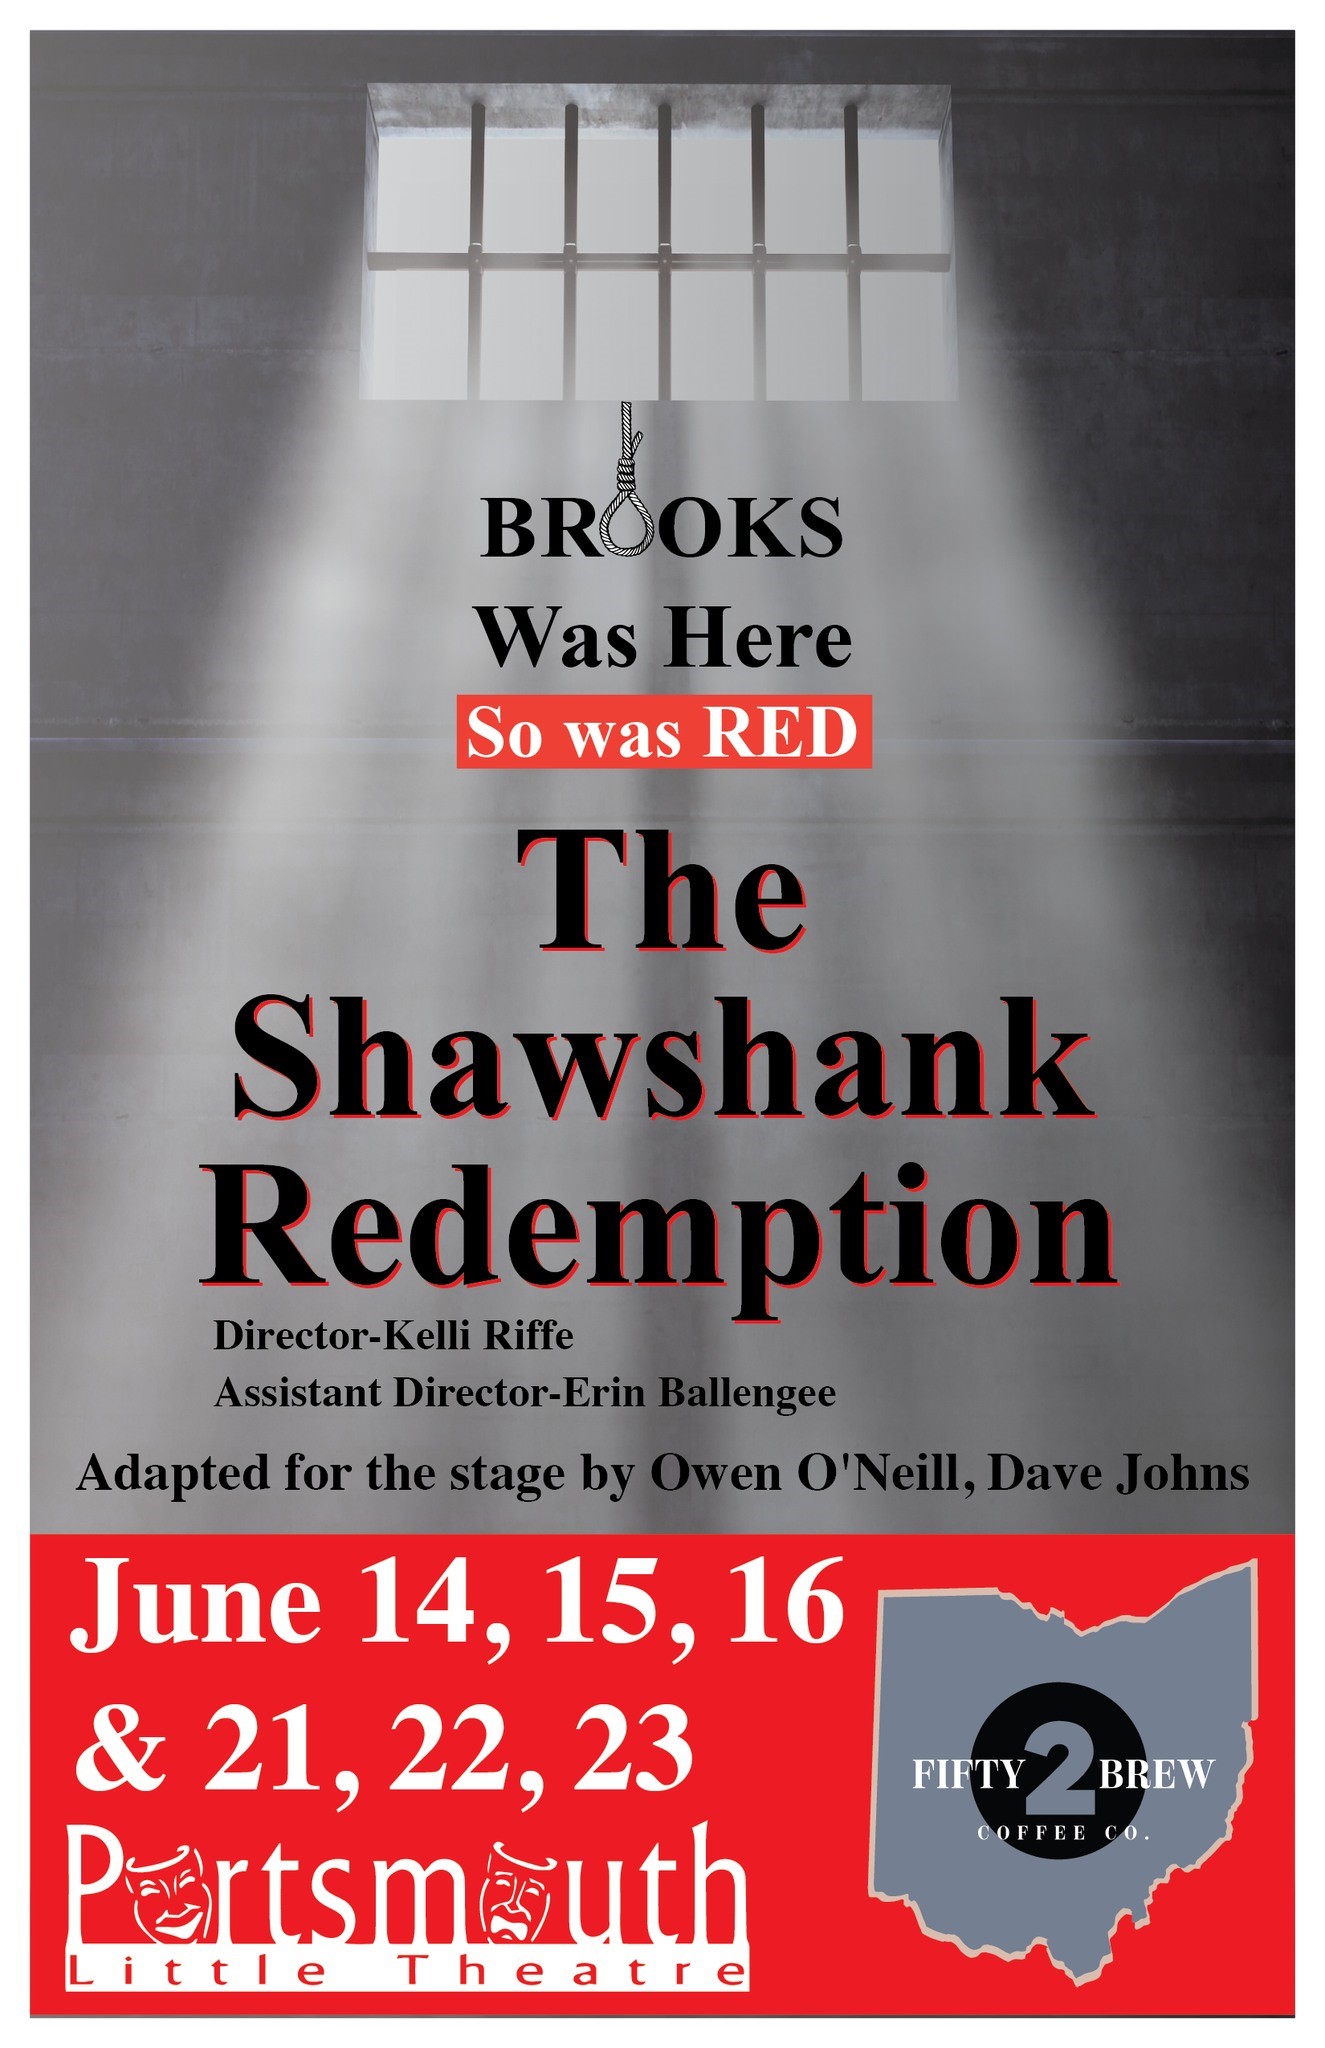 Shawshank Redemption  on juin 14, 19:30@Portsmouth Little Theatre - Choisissez un siège,Achetez des billets et obtenez des informations surPortsmouth Little Theatre 